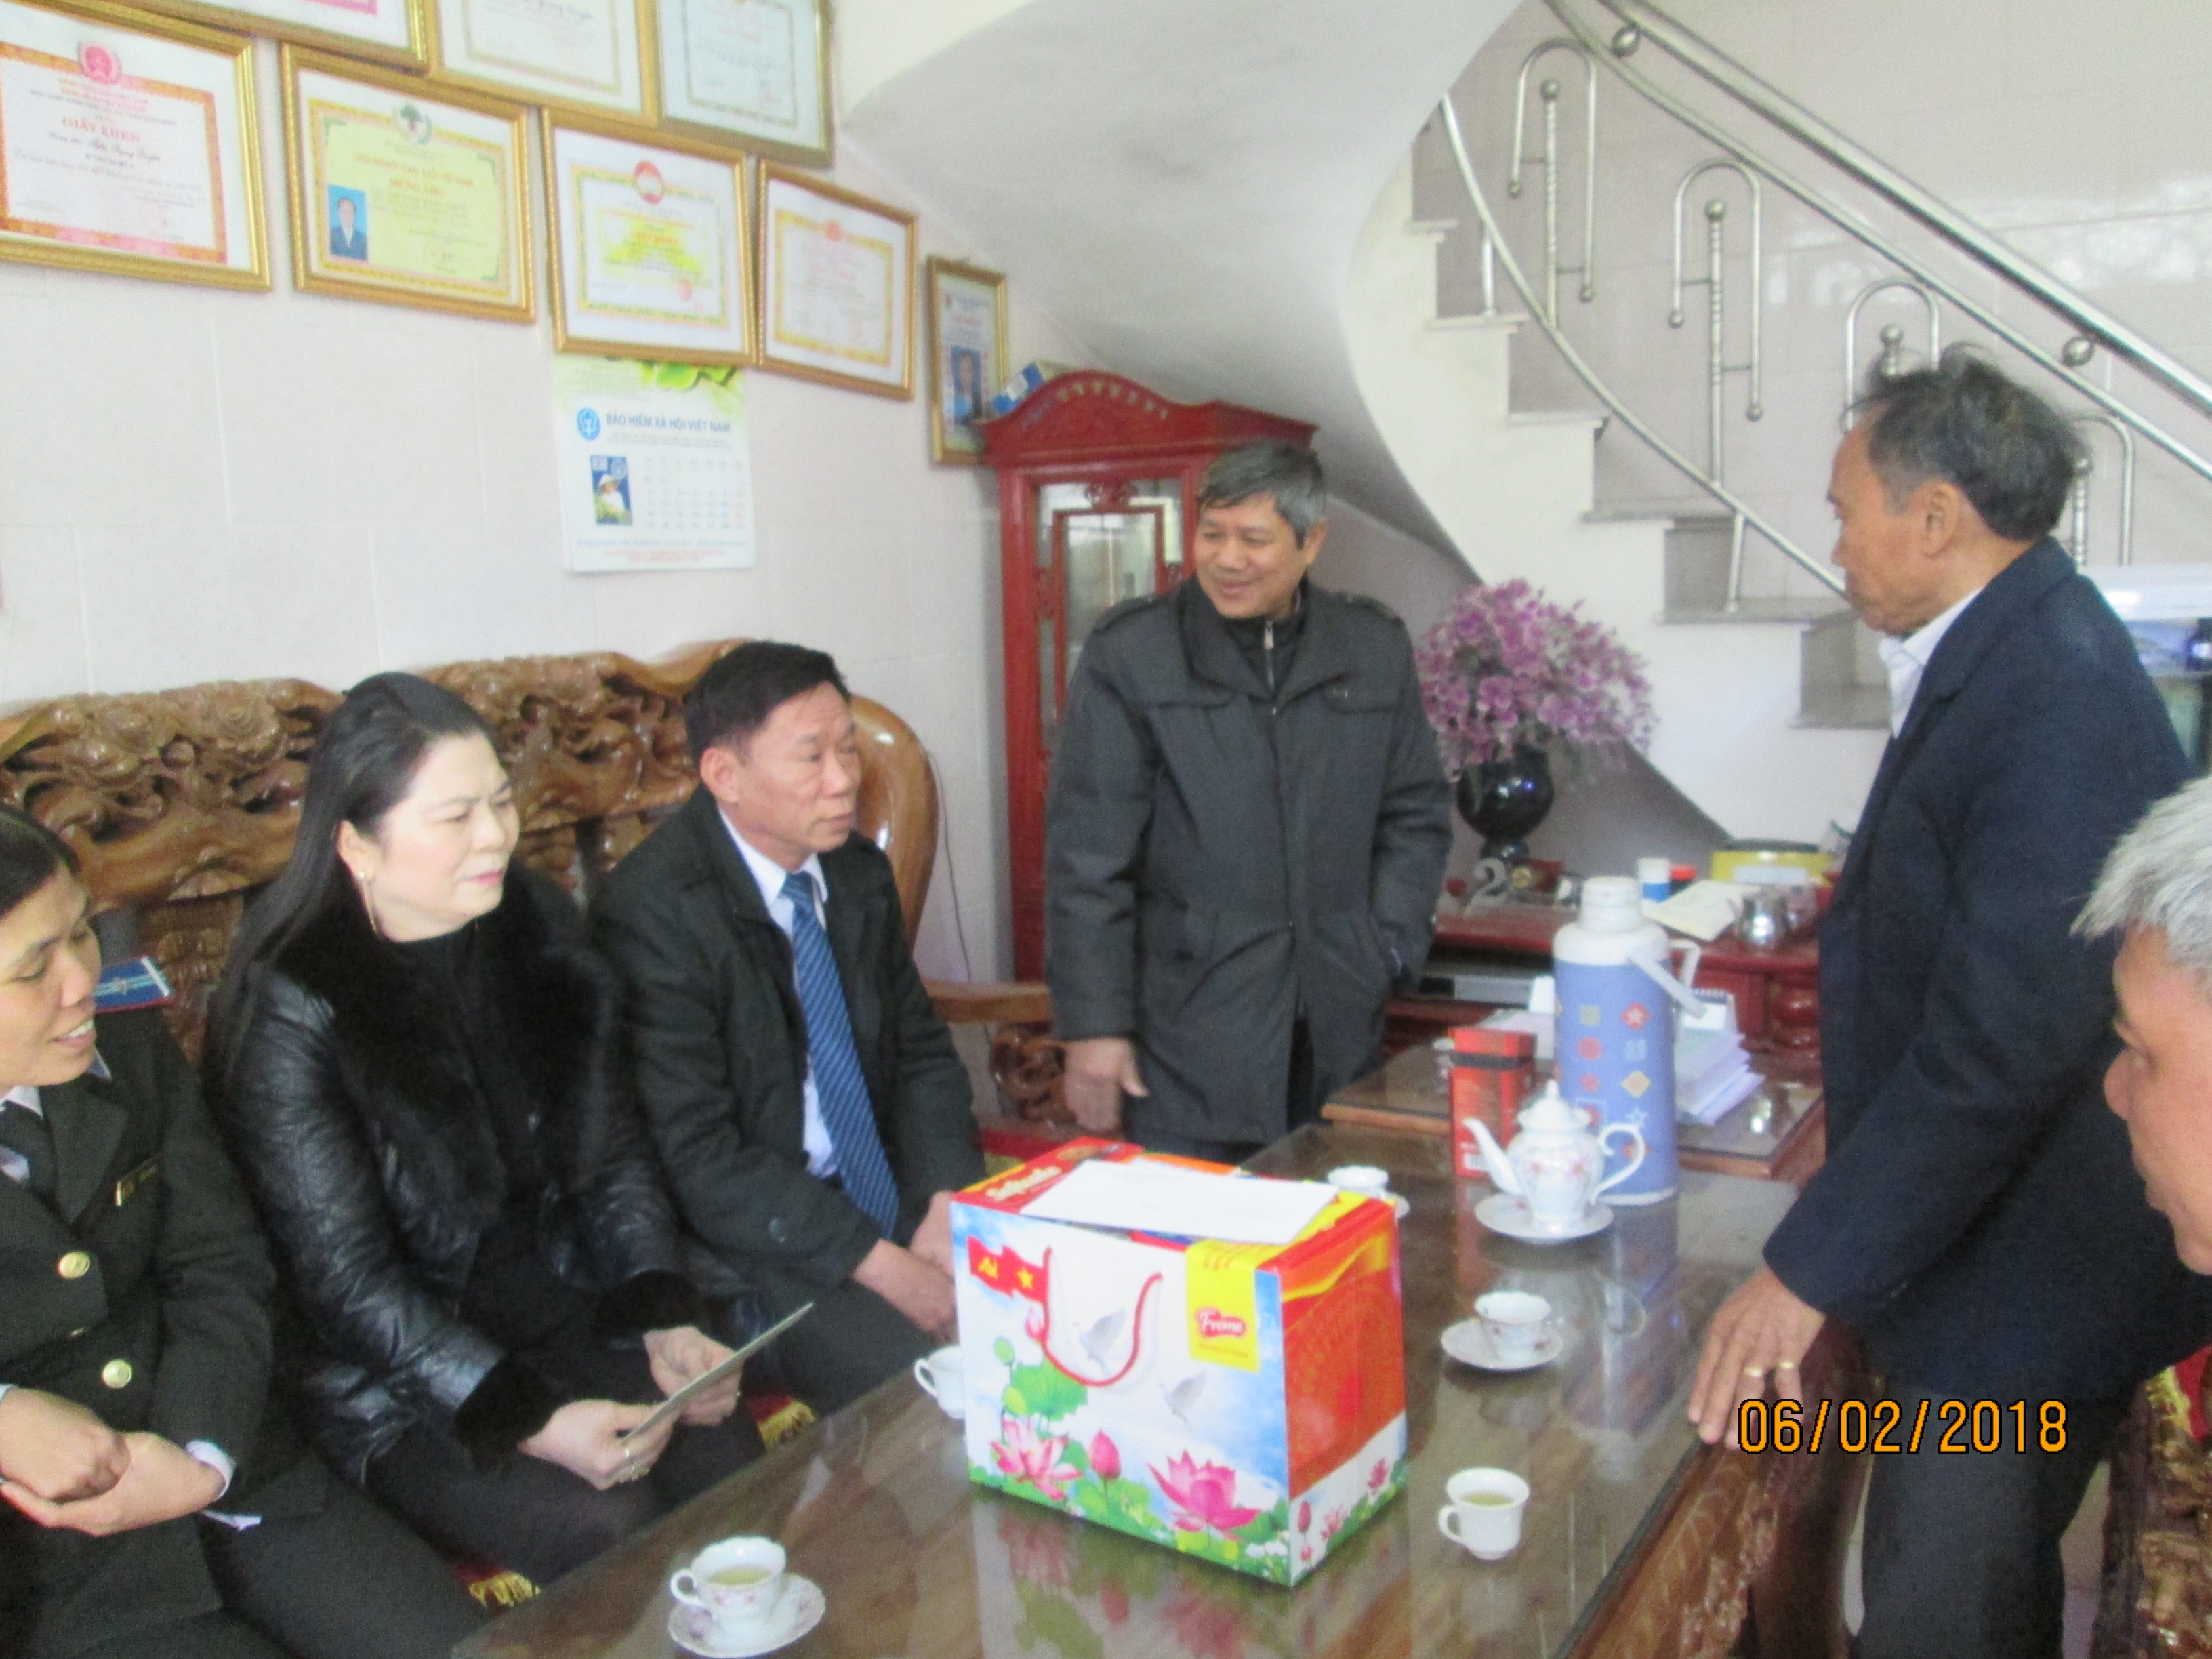 Cục Thi hành án dân sự tỉnh Ninh Bình tổ chức tặng quà cho hộ gia đình khó khăn, gia đình chính sách tại thị trấn Bình Minh, huyện Kim Sơn nhân dịp tết Mậu Tuất 2018.